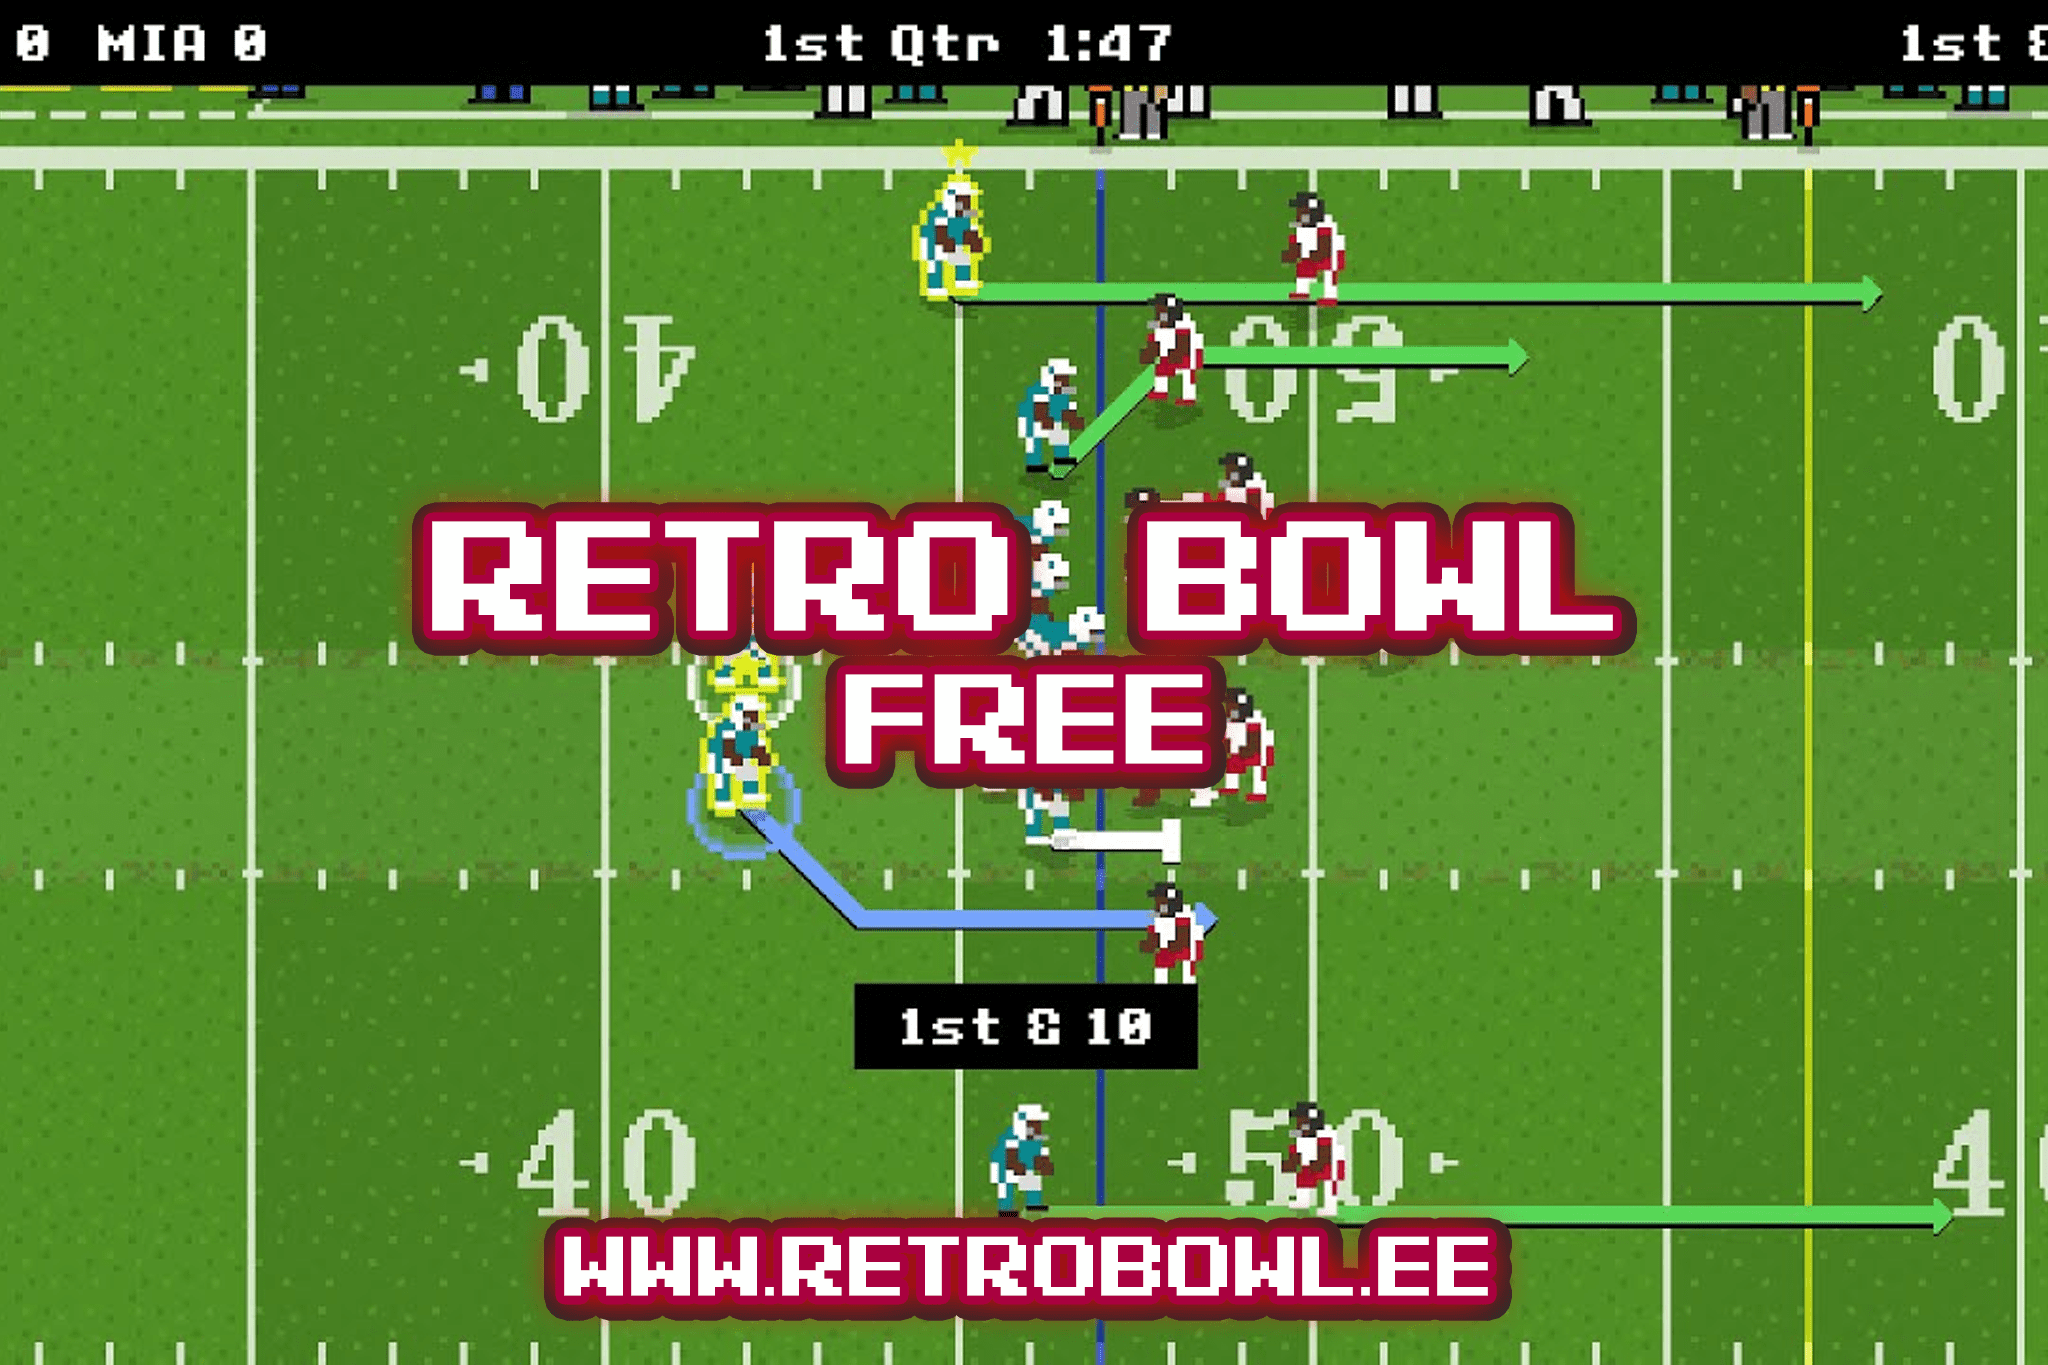 retro bowl free game